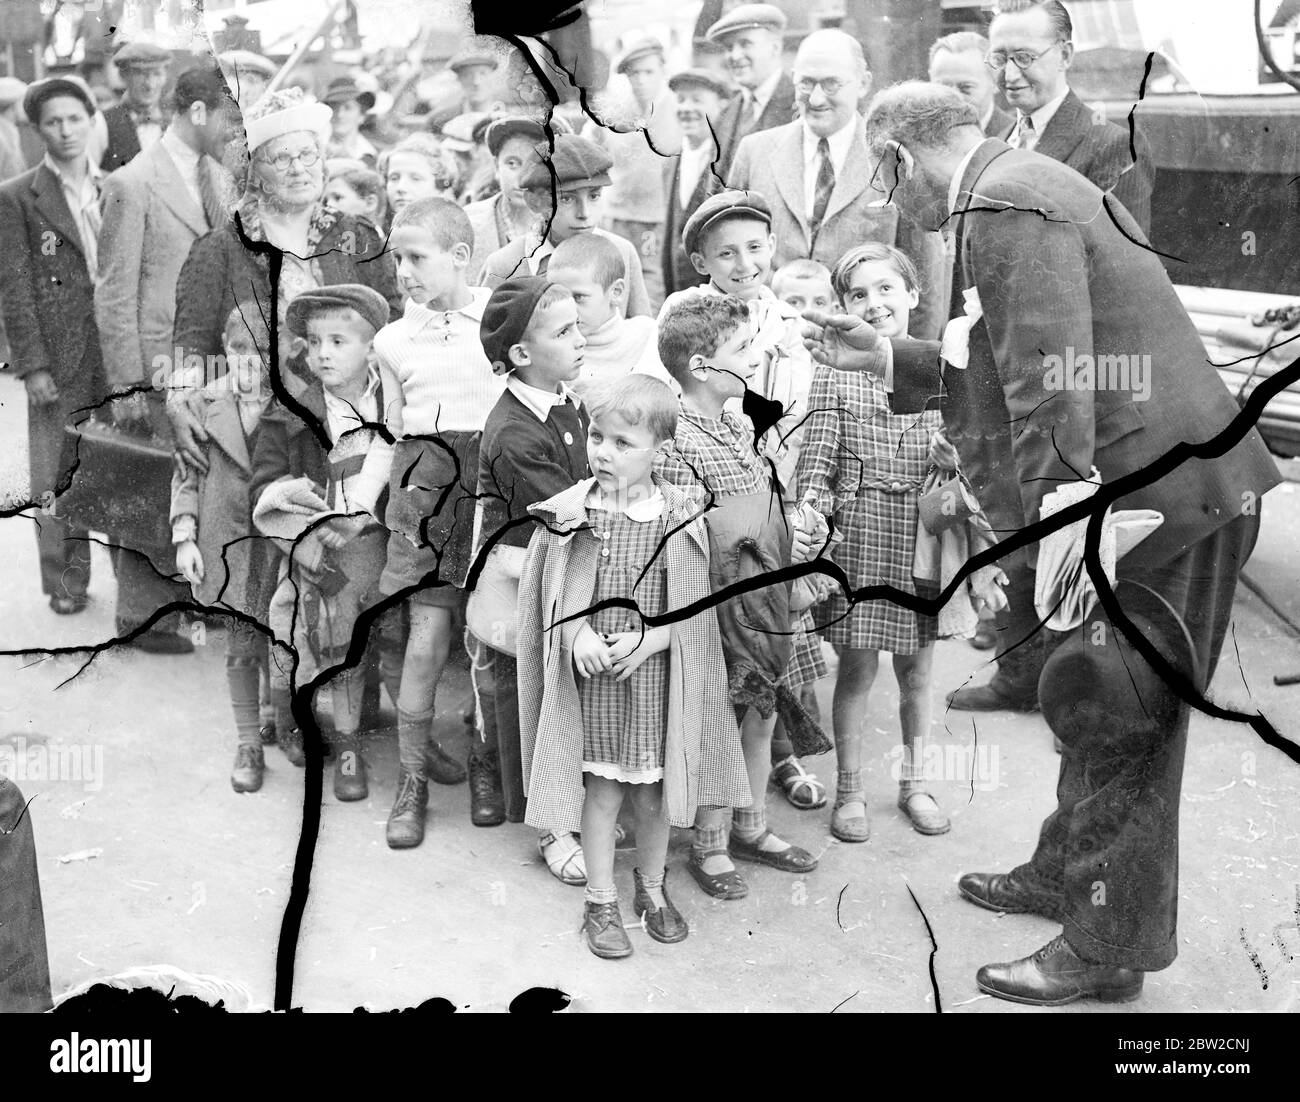 Il primo contingente di bambini rifugiati polacchi, provenienti dal confine tedesco polacco, sbarcò dalle SS Warszawa a Mark Brown's Wharf, Tooley Street, Londra. I bambini rifugiati che ricevono istruzioni da un funzionario al loro arrivo. 29 agosto 1939 Foto Stock